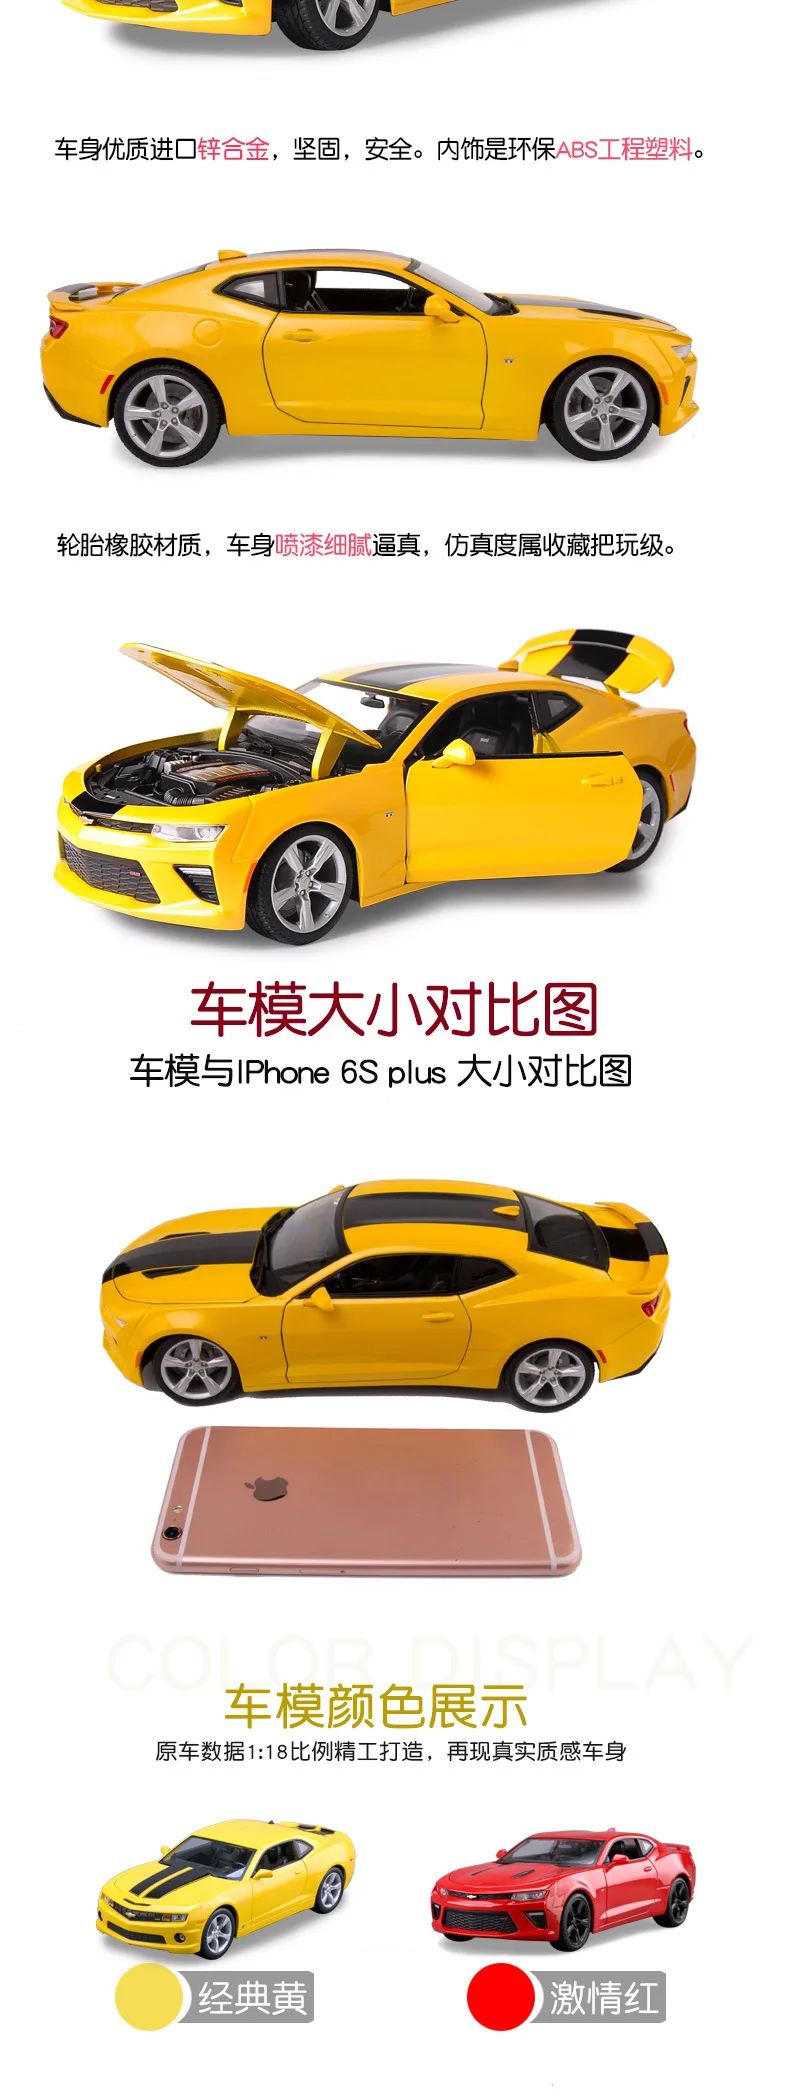 1:18 Масштаб модели автомобилей Die-cast сплава моделирование авто мобильных транспортных средств gld3 игрушки для детей Chevrolet Camaro/корвет;